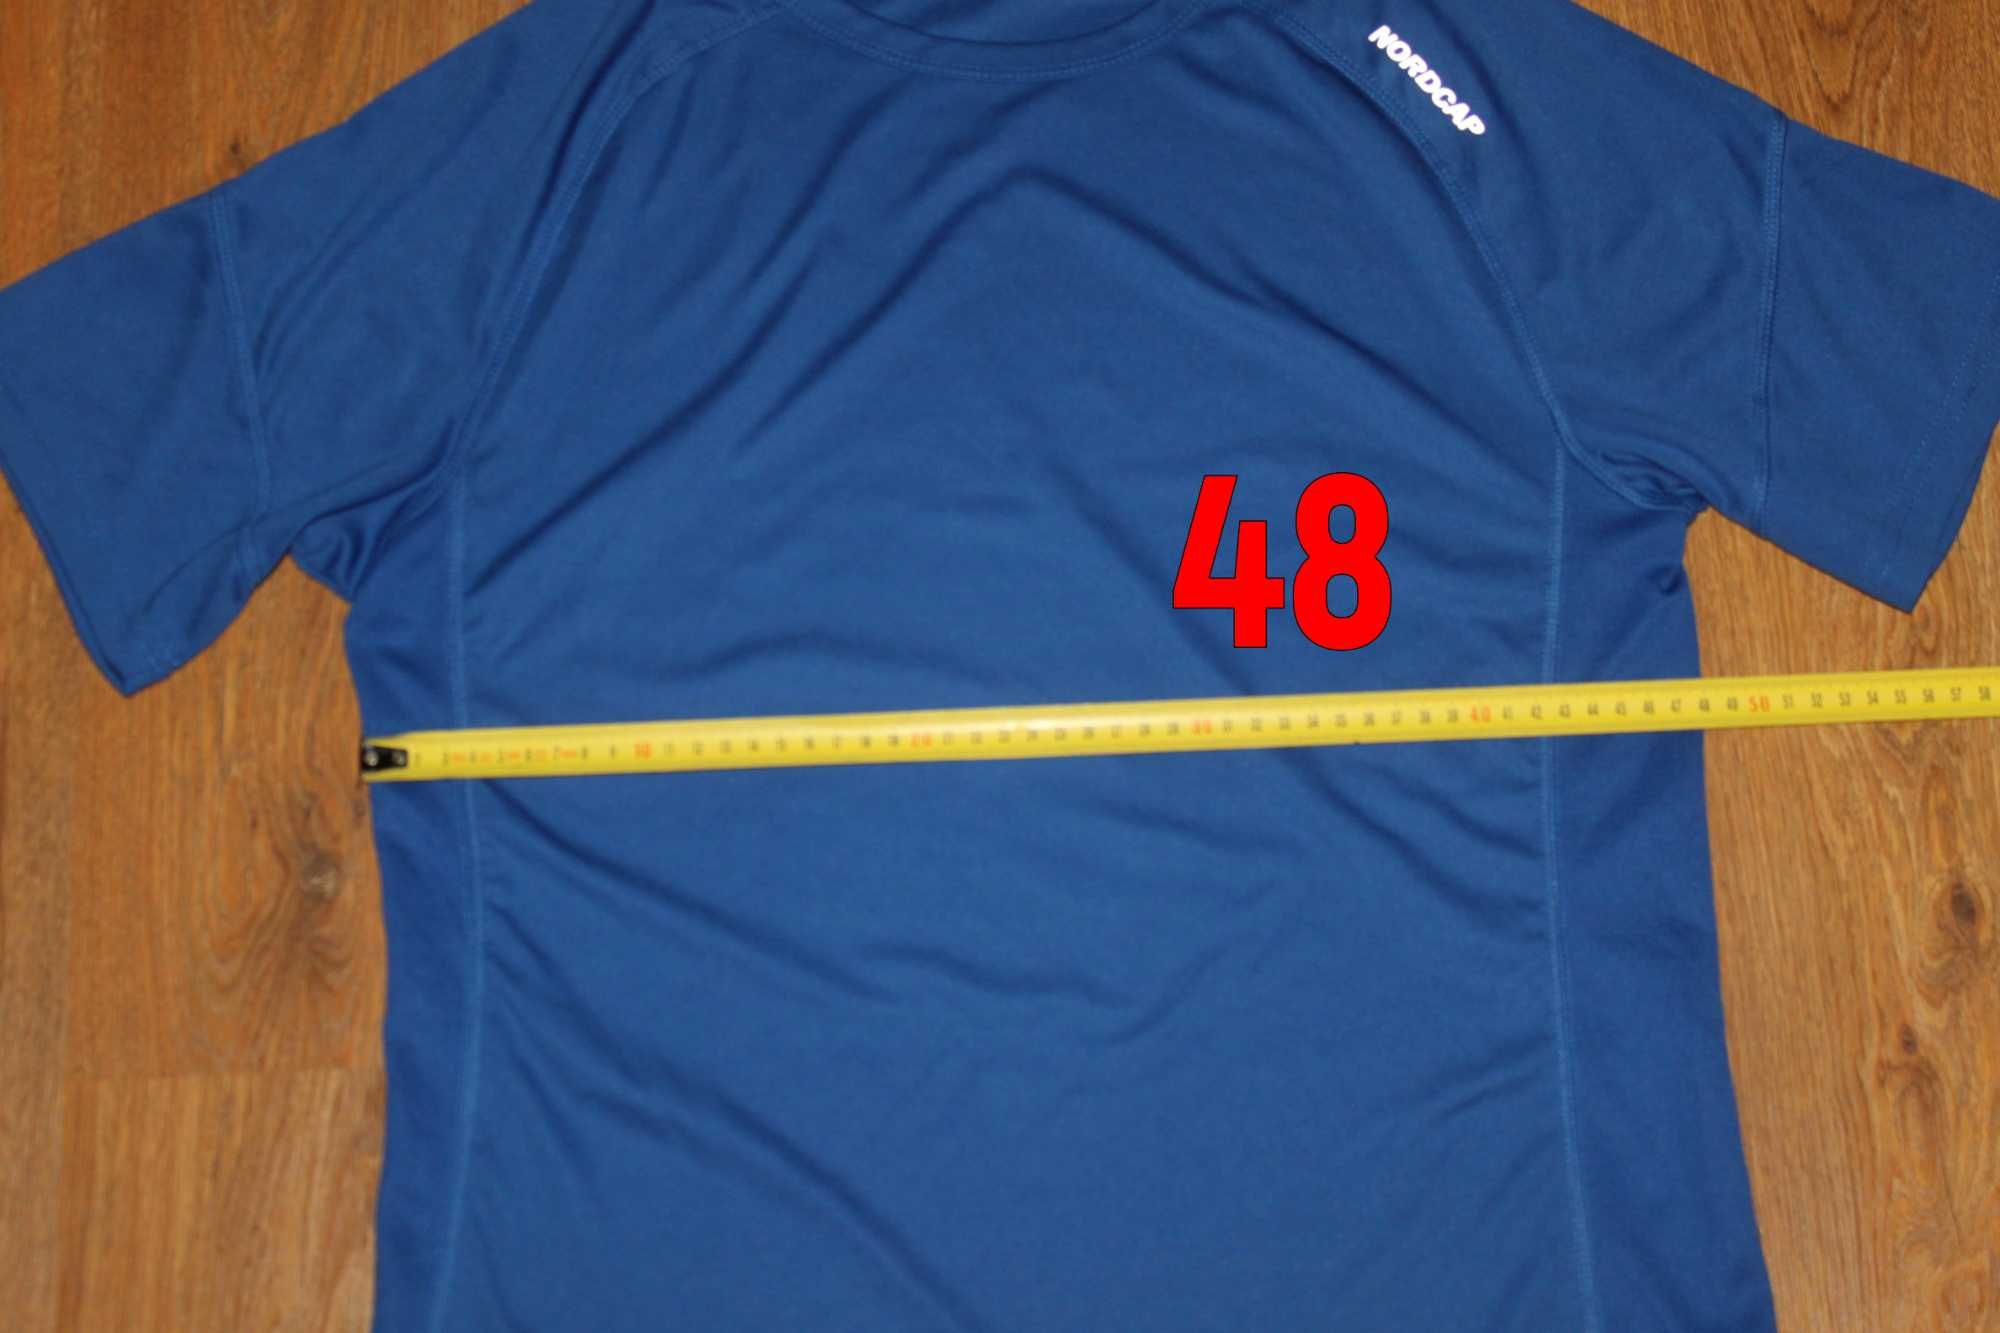 Мужская спортивная синяя футболка nordcap m